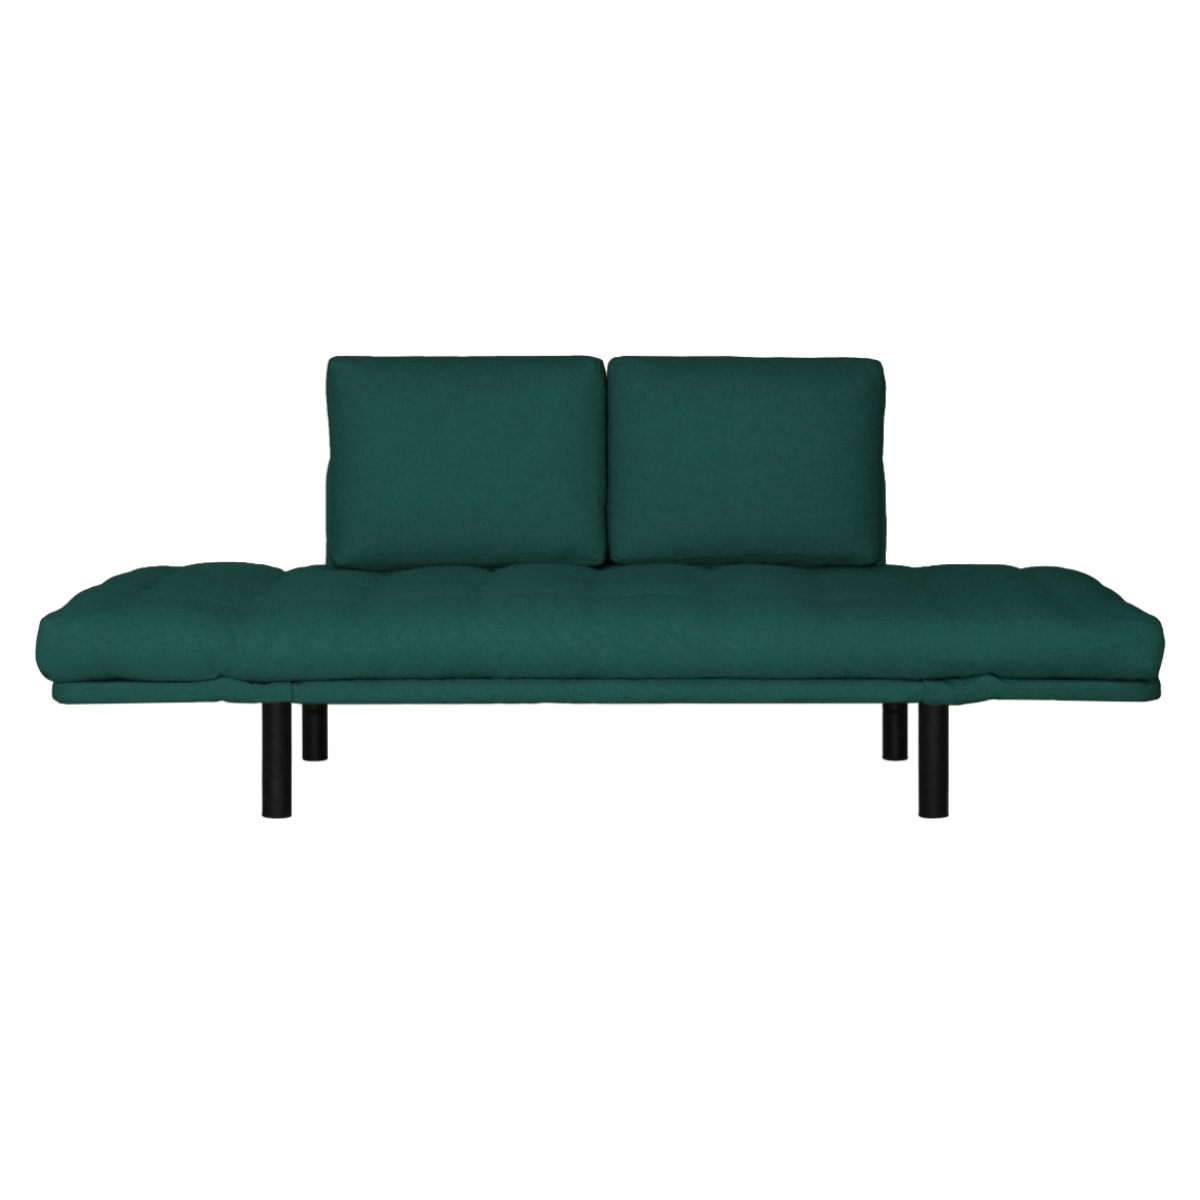 Sofa cama Futon Company ®